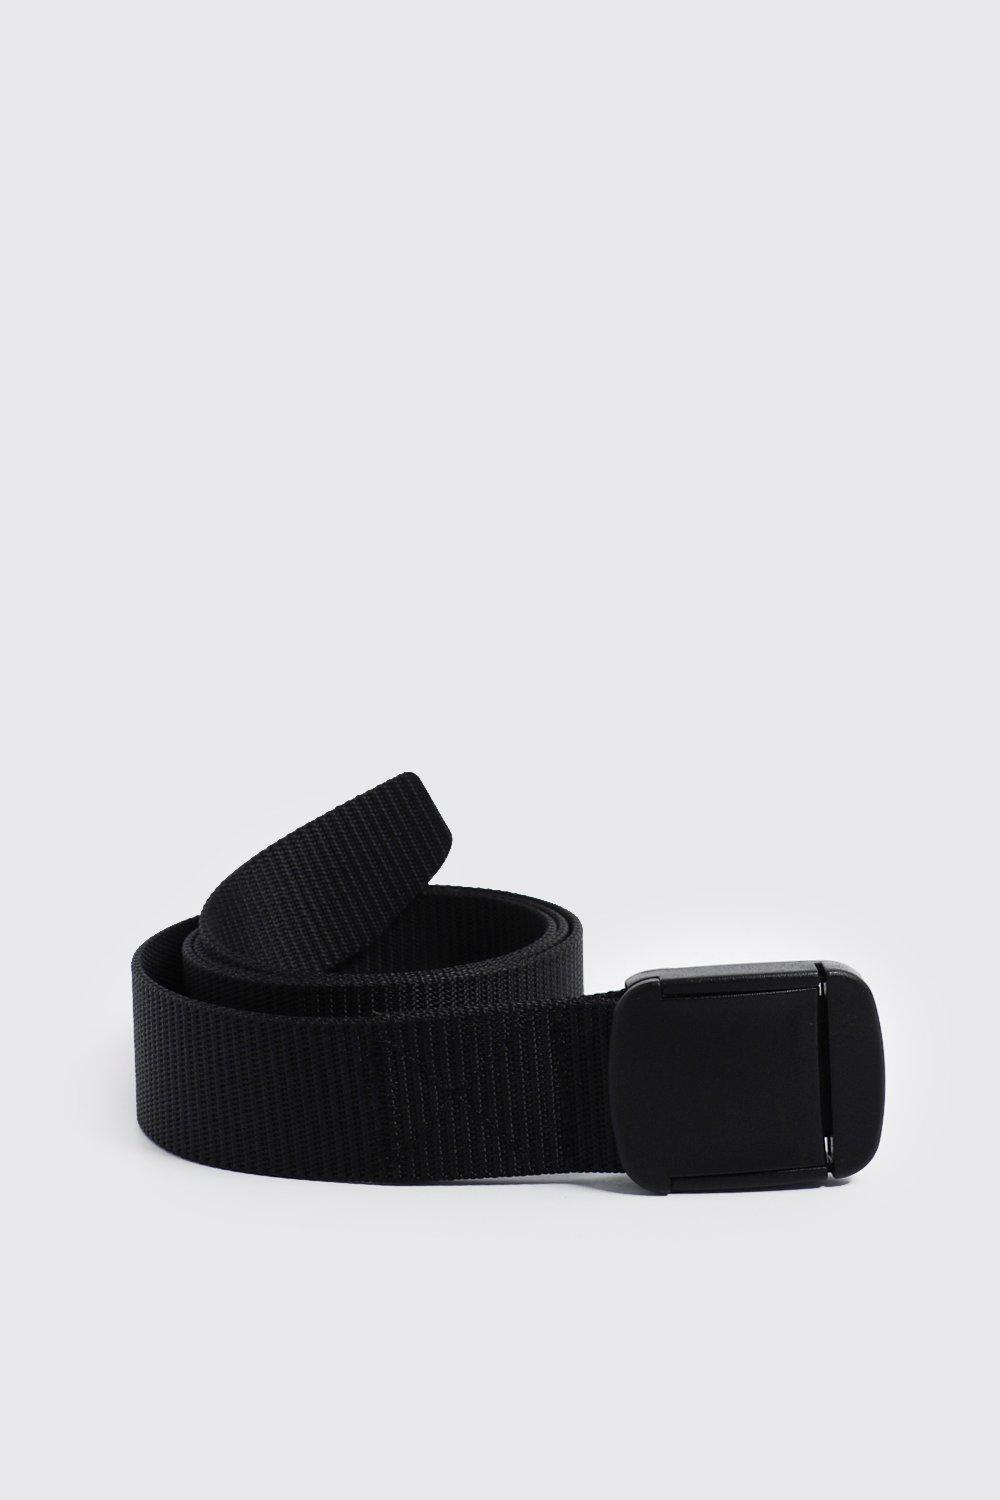 Mens' Belts | Black, Brown & Leather Belts For Men | boohooMAN